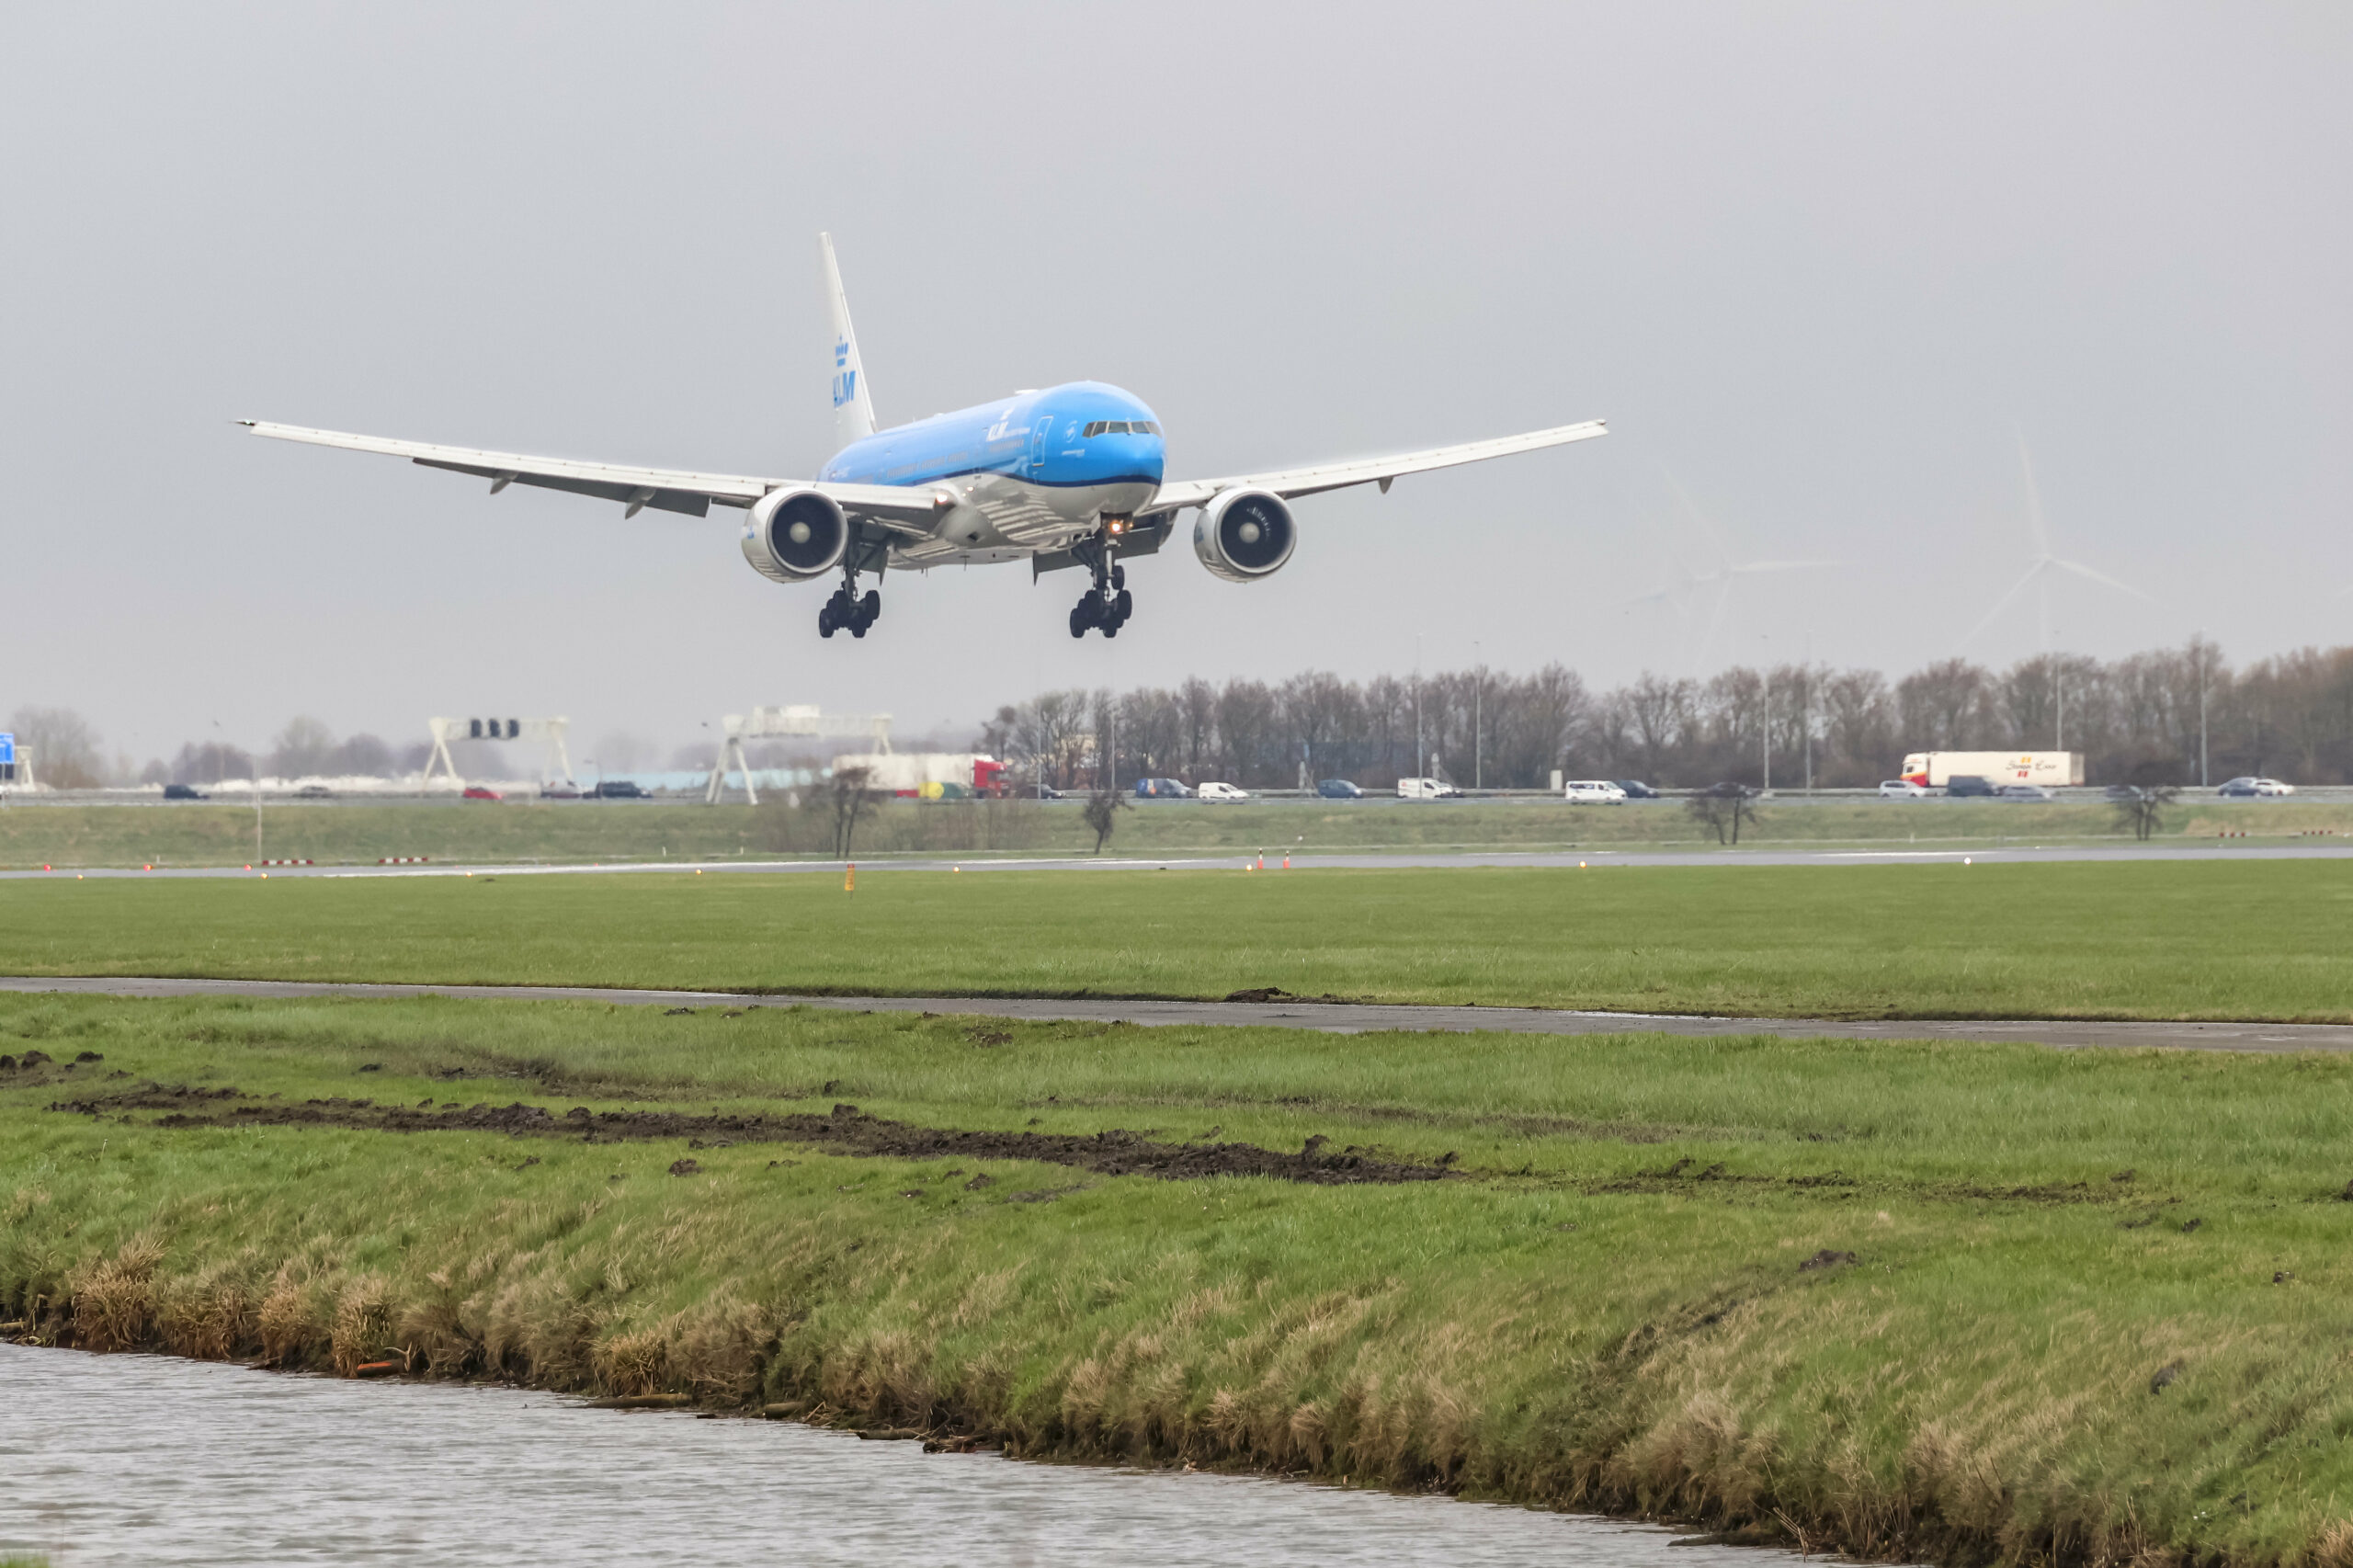 Ein Großraumflugzeug des Typs Boeing 777 von der Airline KLM musste eine Sicherheitslandung hinlegen. (Symbolbild)